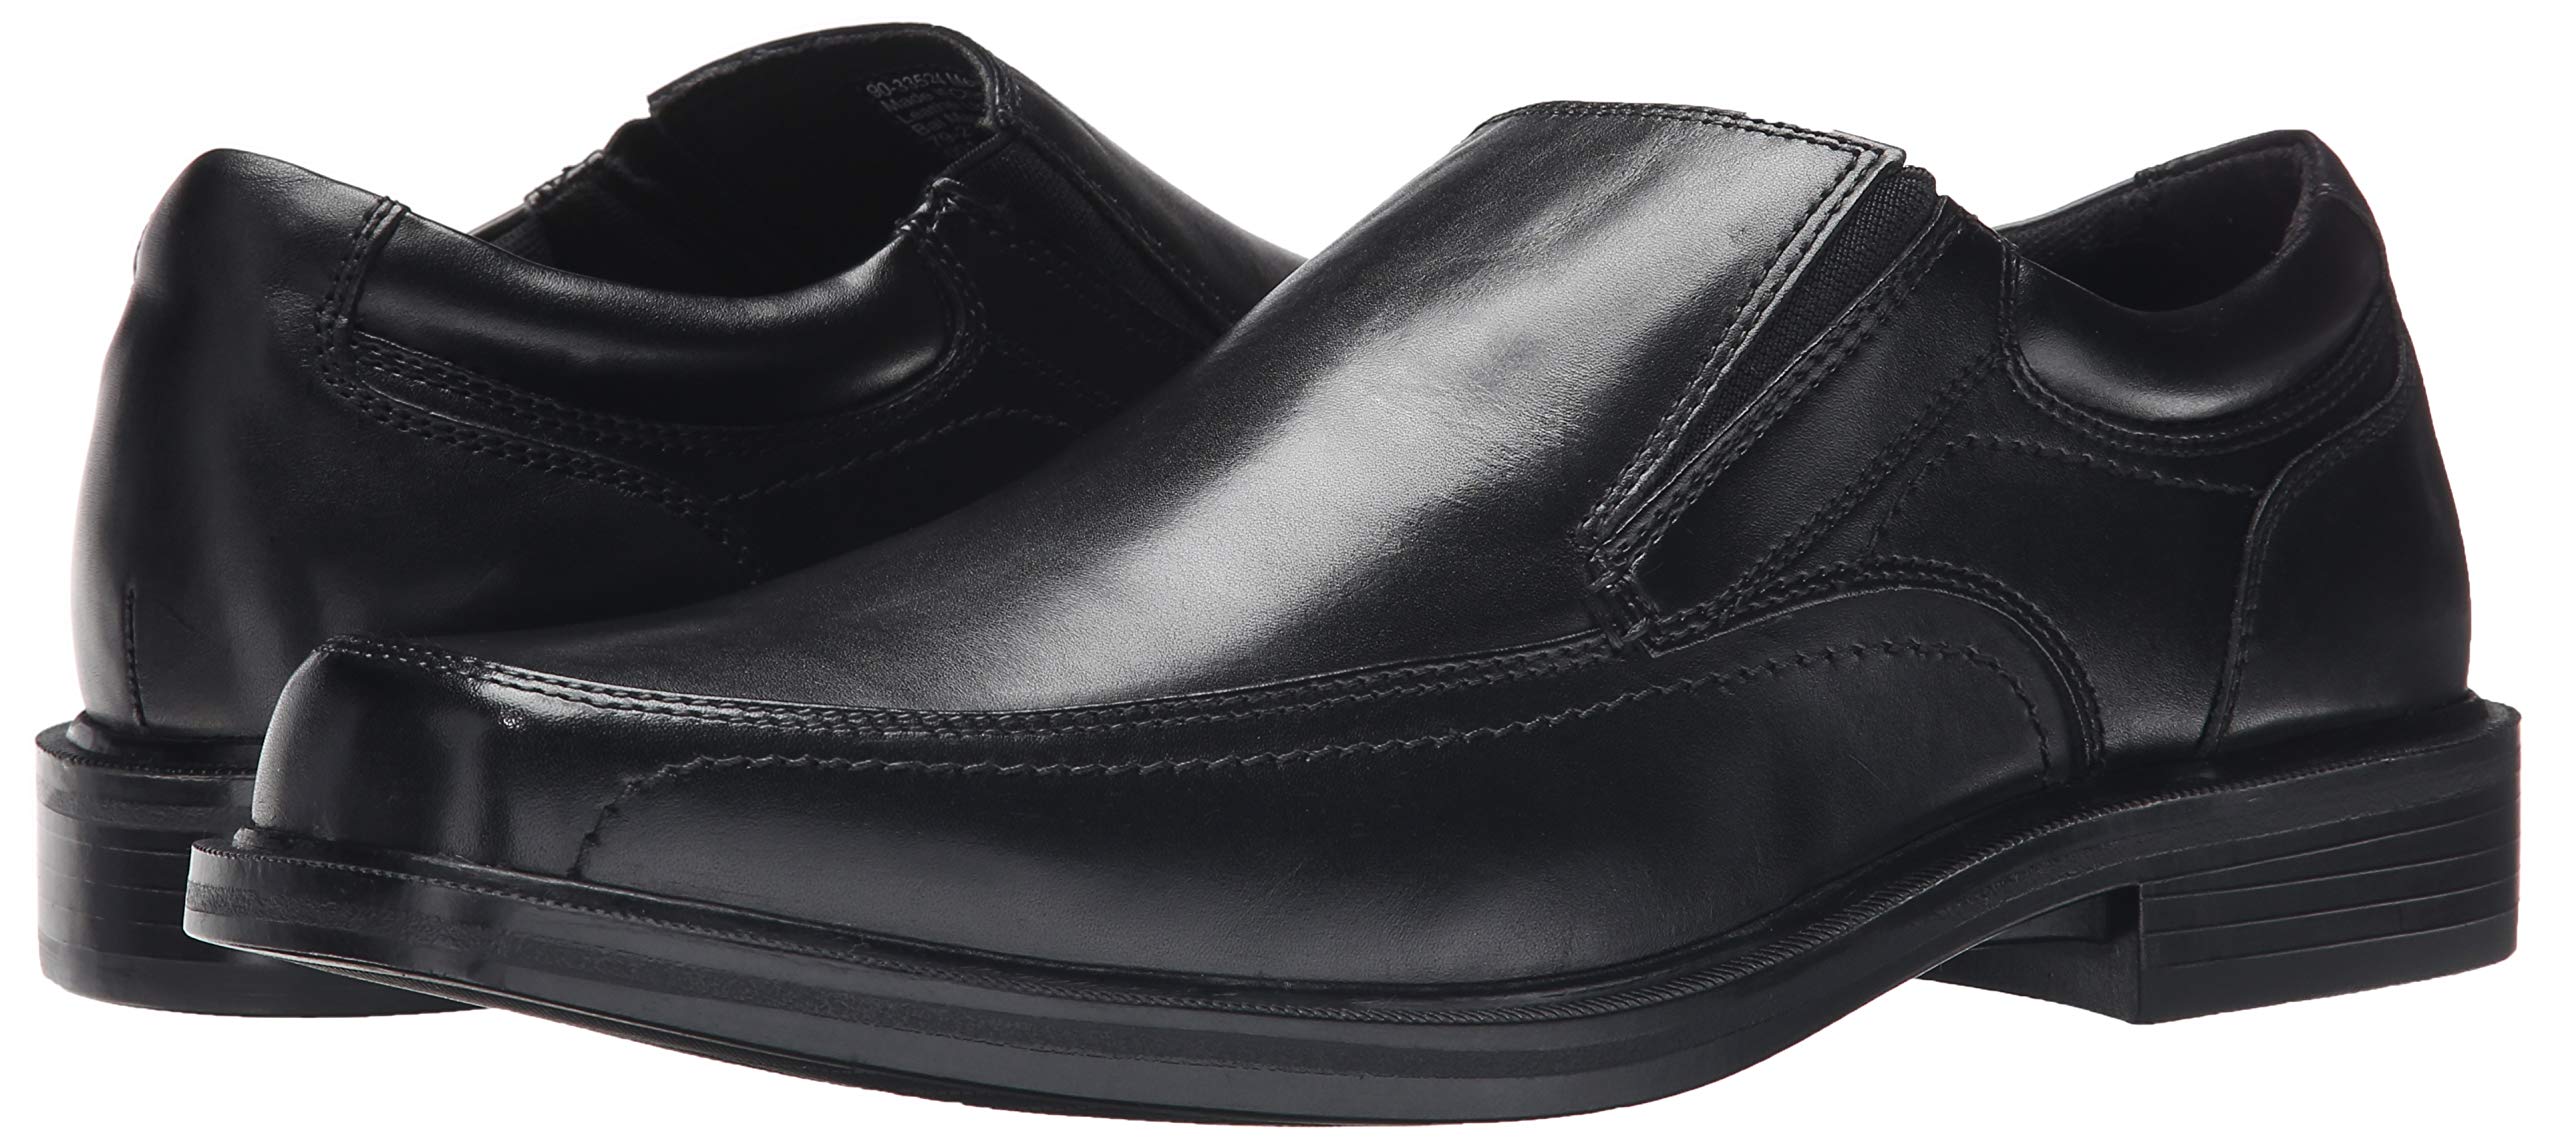 Dockers Men's Edson Slip-On Loafer